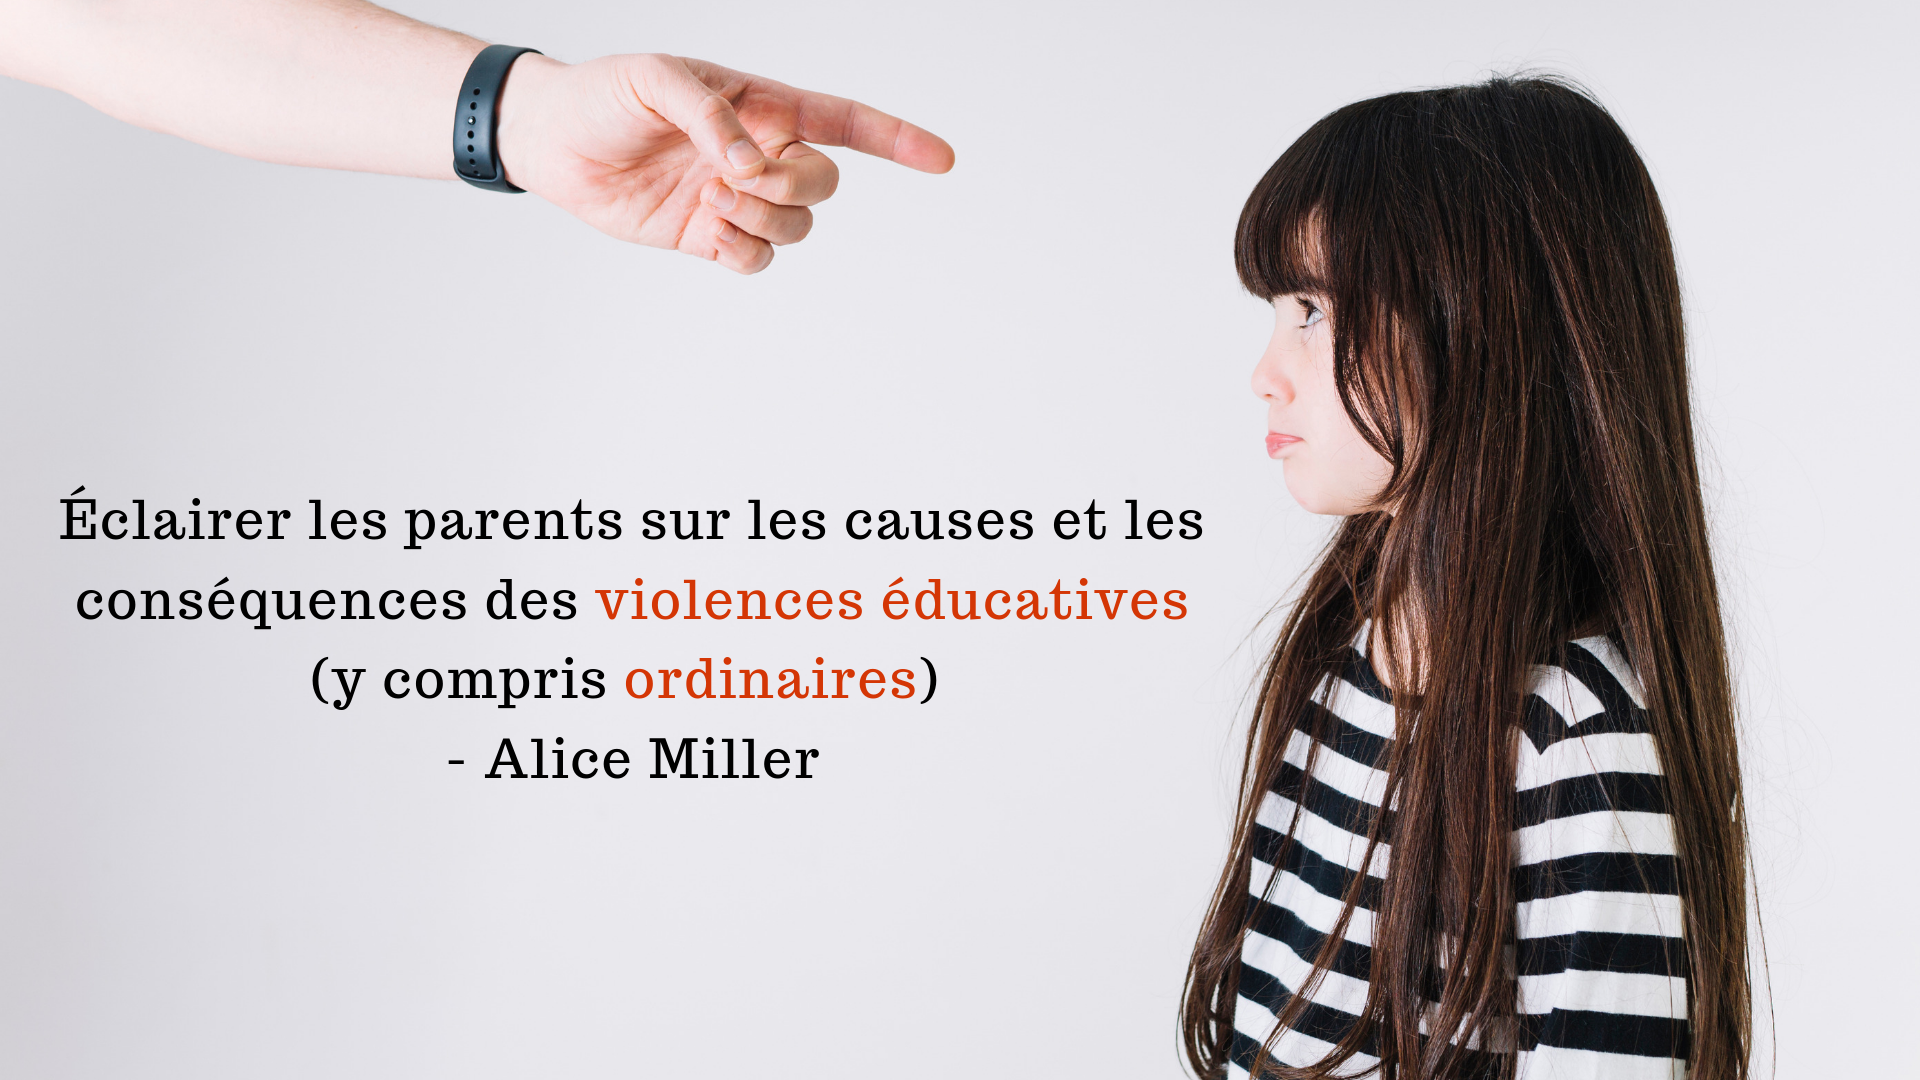 Eclairer Les Parents Sur Les Causes Et Les Consequences Des Violences Educatives Y Compris Ordinaires Alice Miller Apprendre A Eduquer